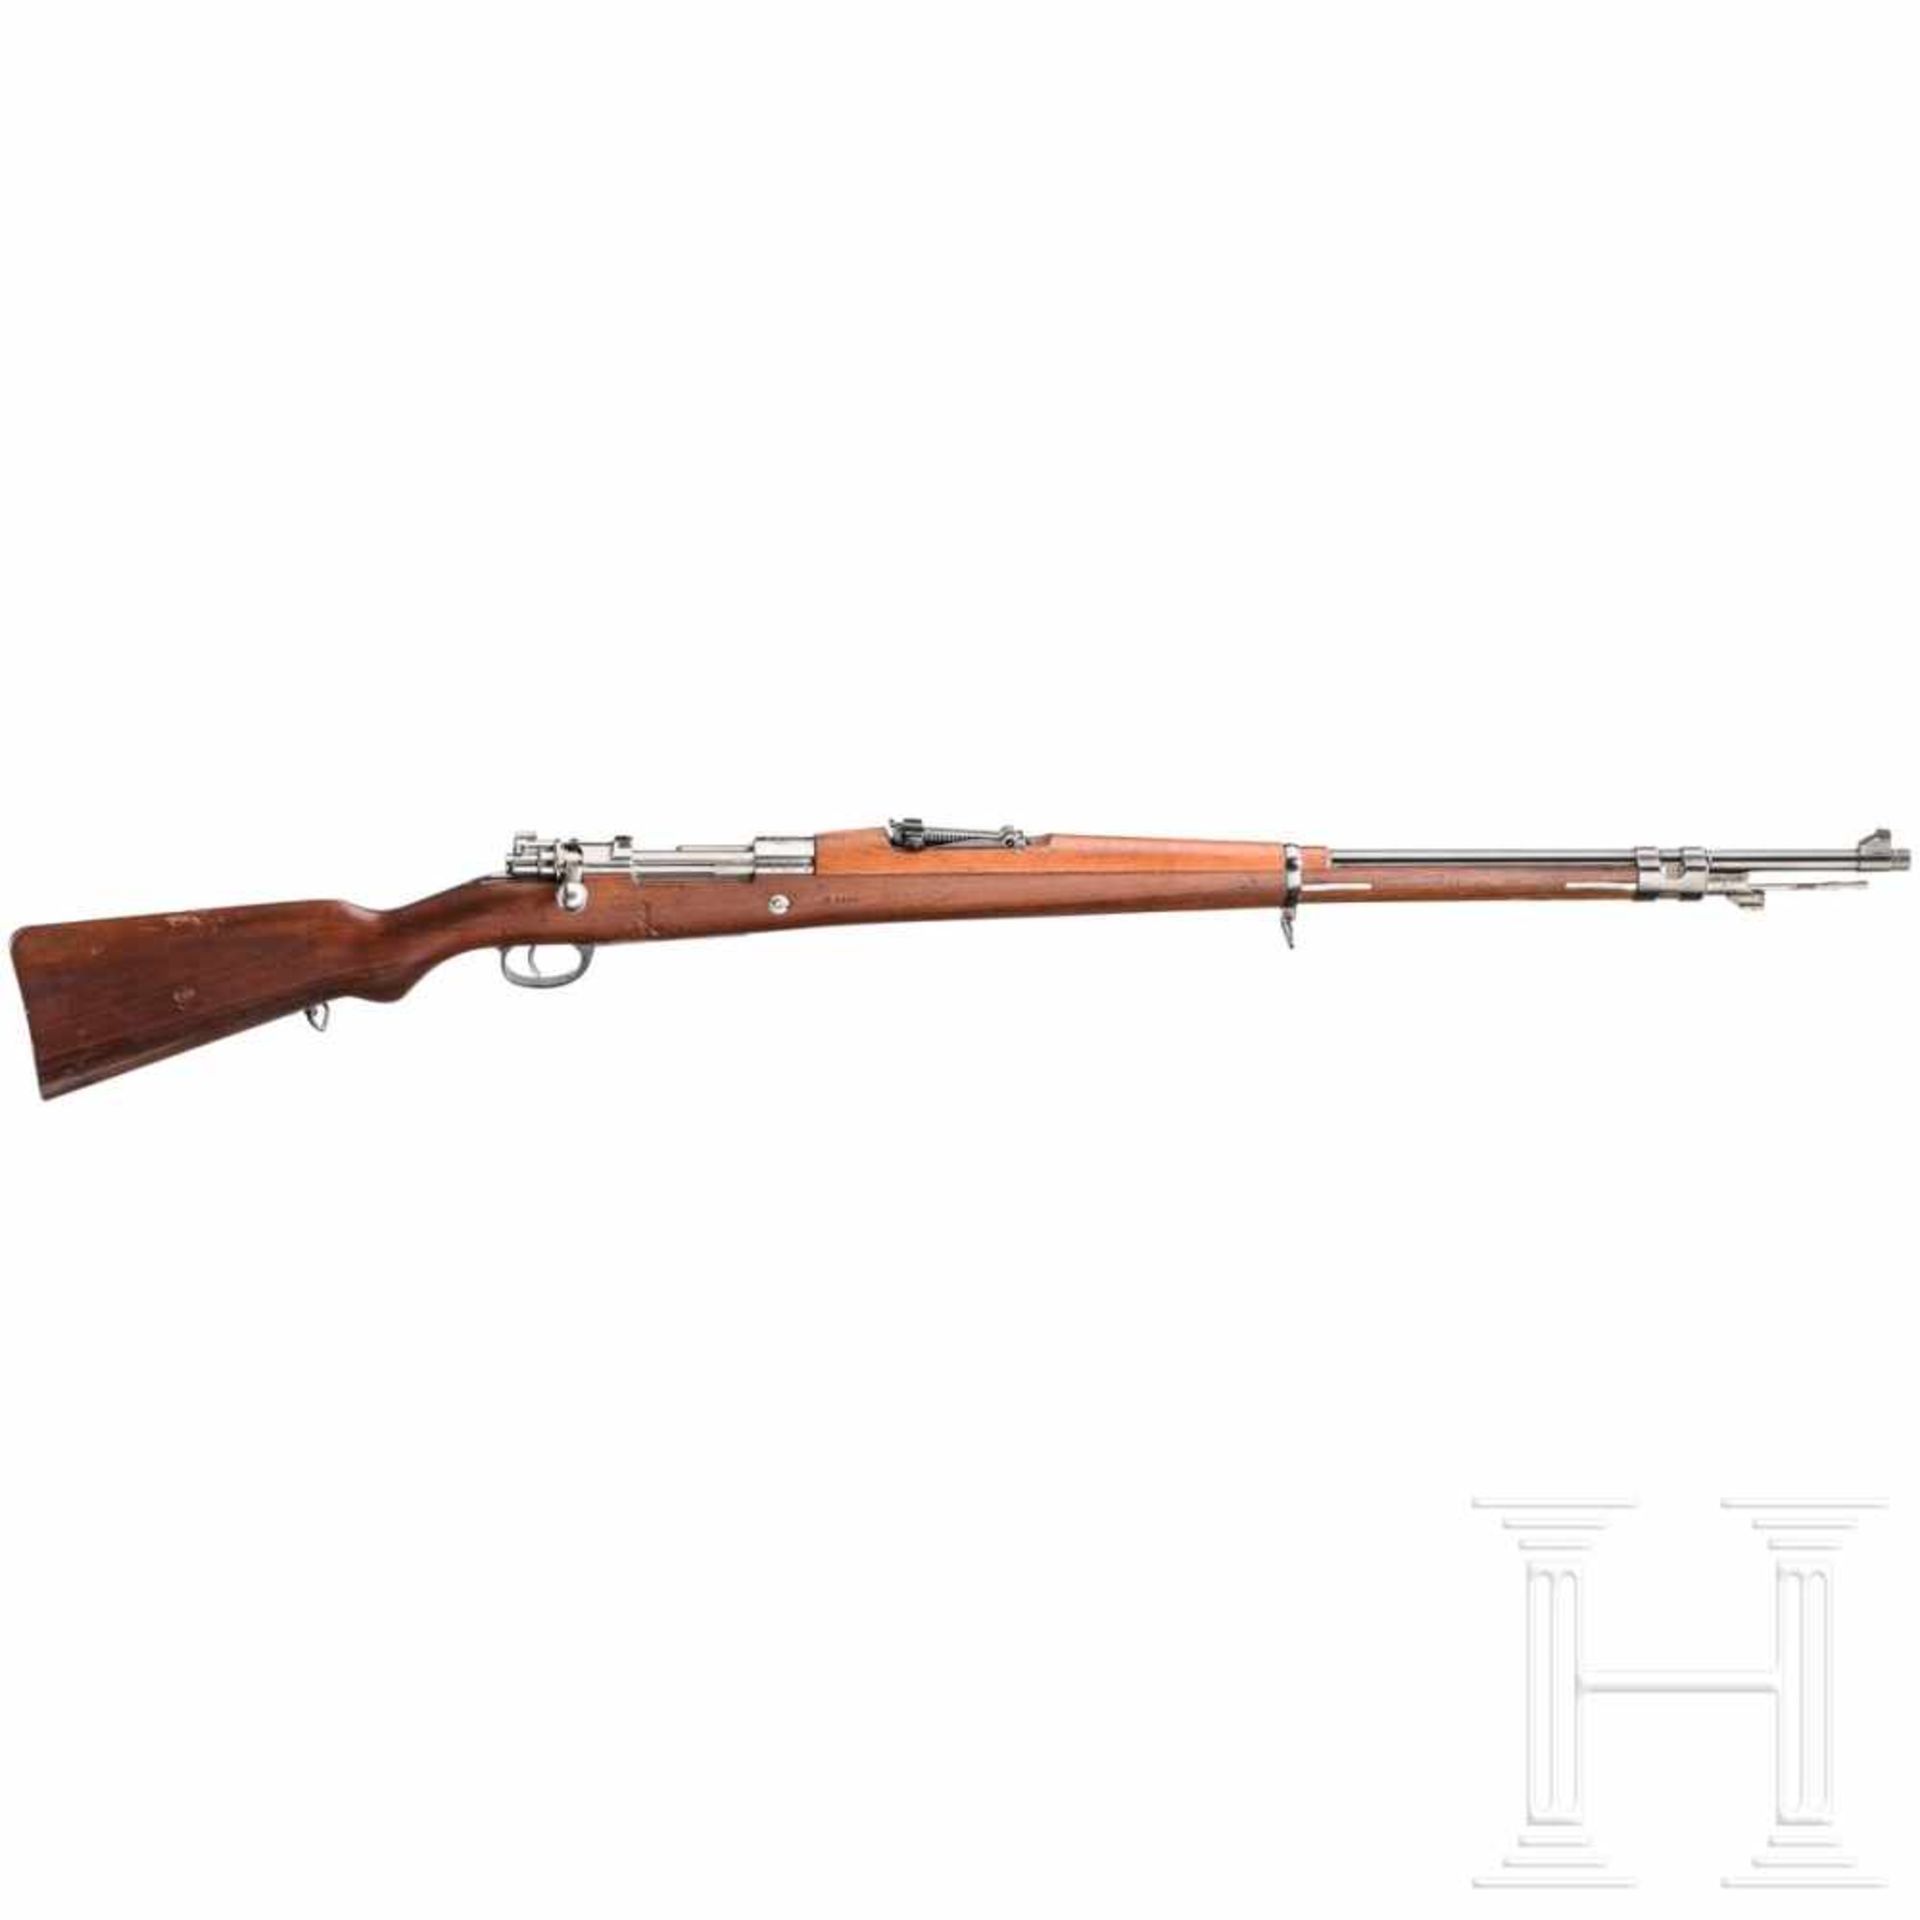 Argentinien - Gewehr Mod. 1909, DWMKal. 7,65 x 53 Arg., Nr. H8425, nummergleich. Lauf blank.